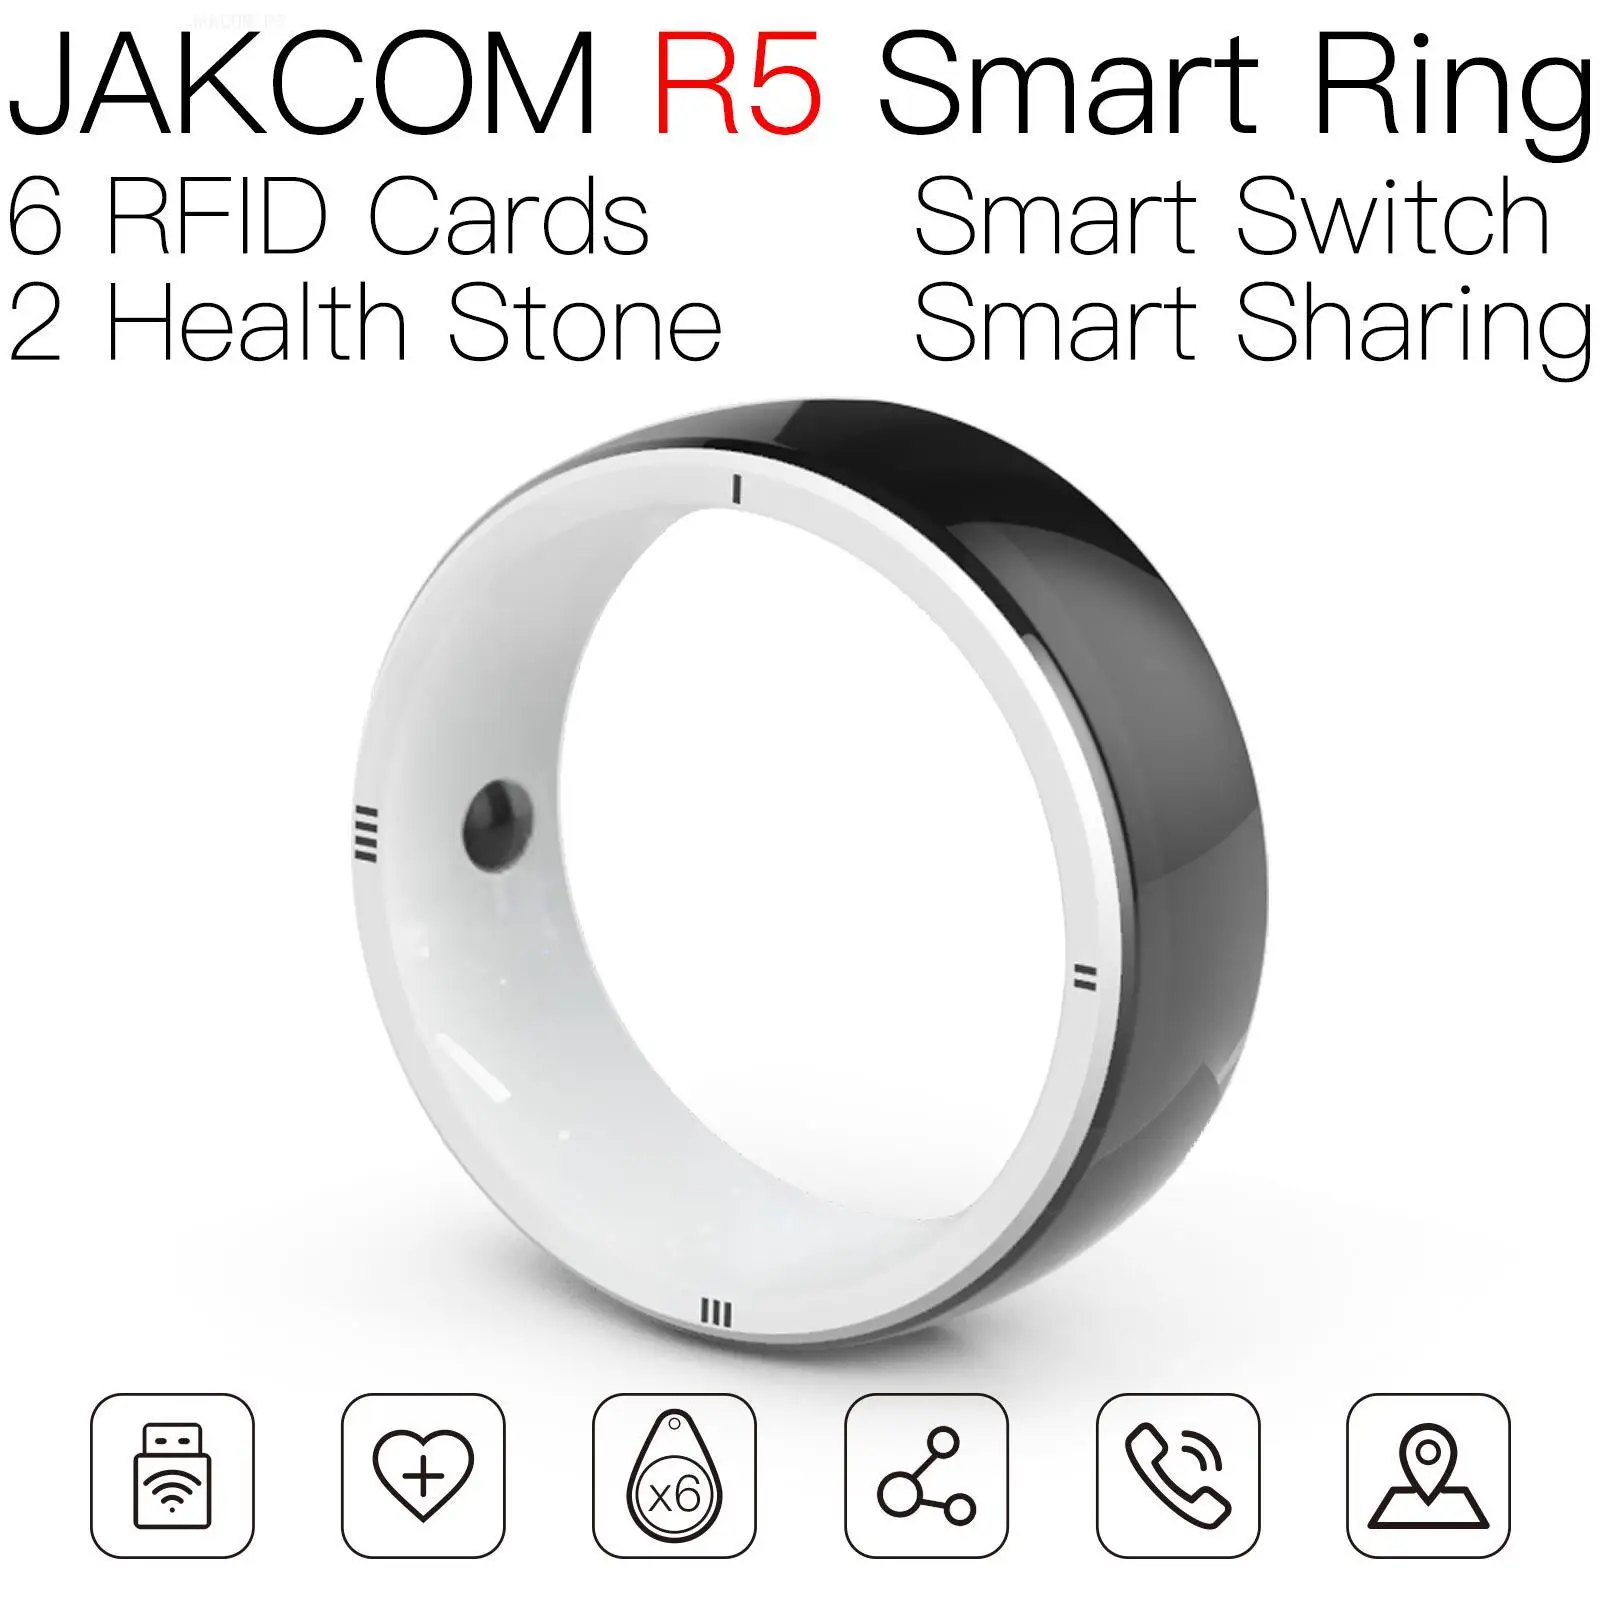 

Умное кольцо JAKCOM R5, новее, чем бирка, рчид, магазин, оповещение, id, uhf, захват videoland, Нидерландская карта, переключатель, Wi-Fi, nfs, кошка, чип из пены